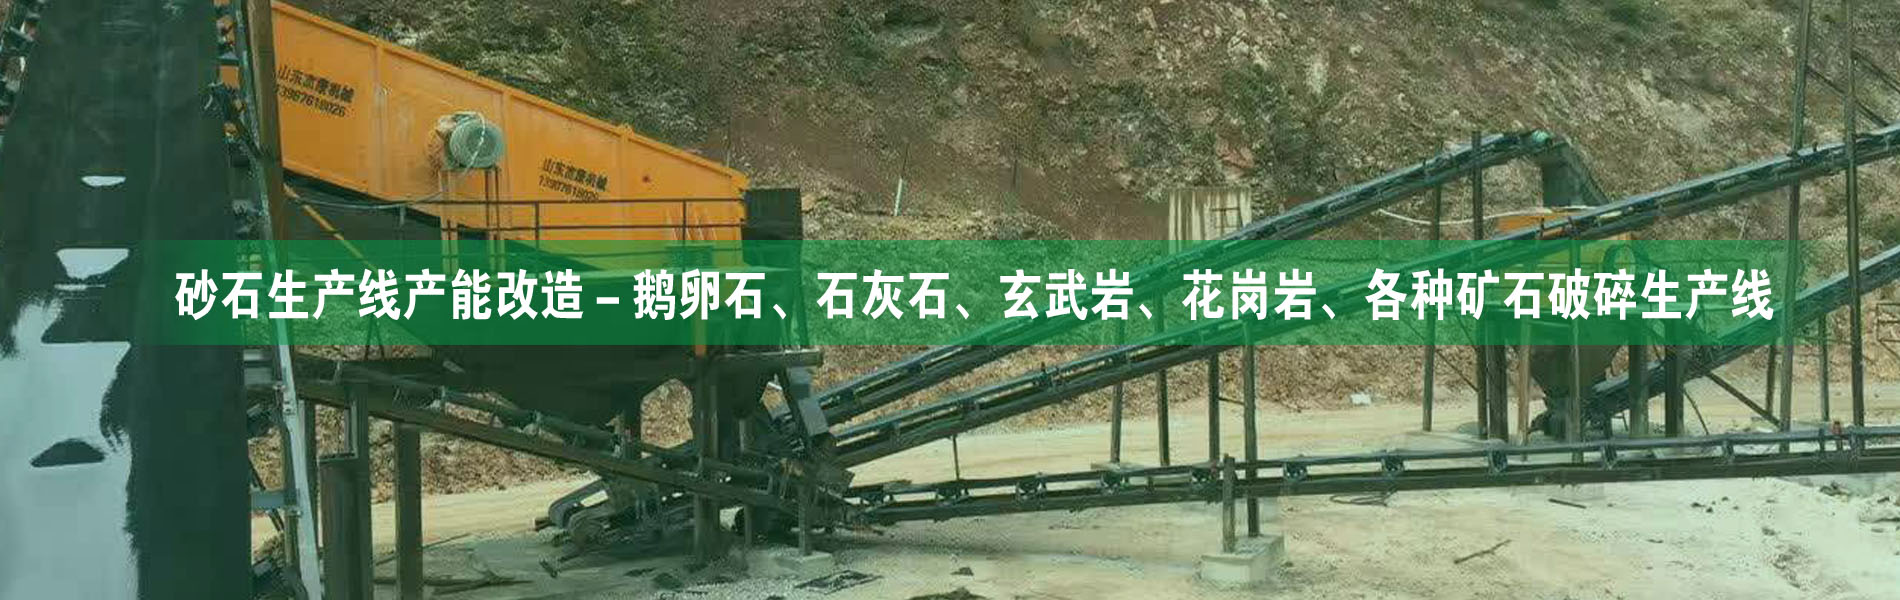 砂石生產線(xian)